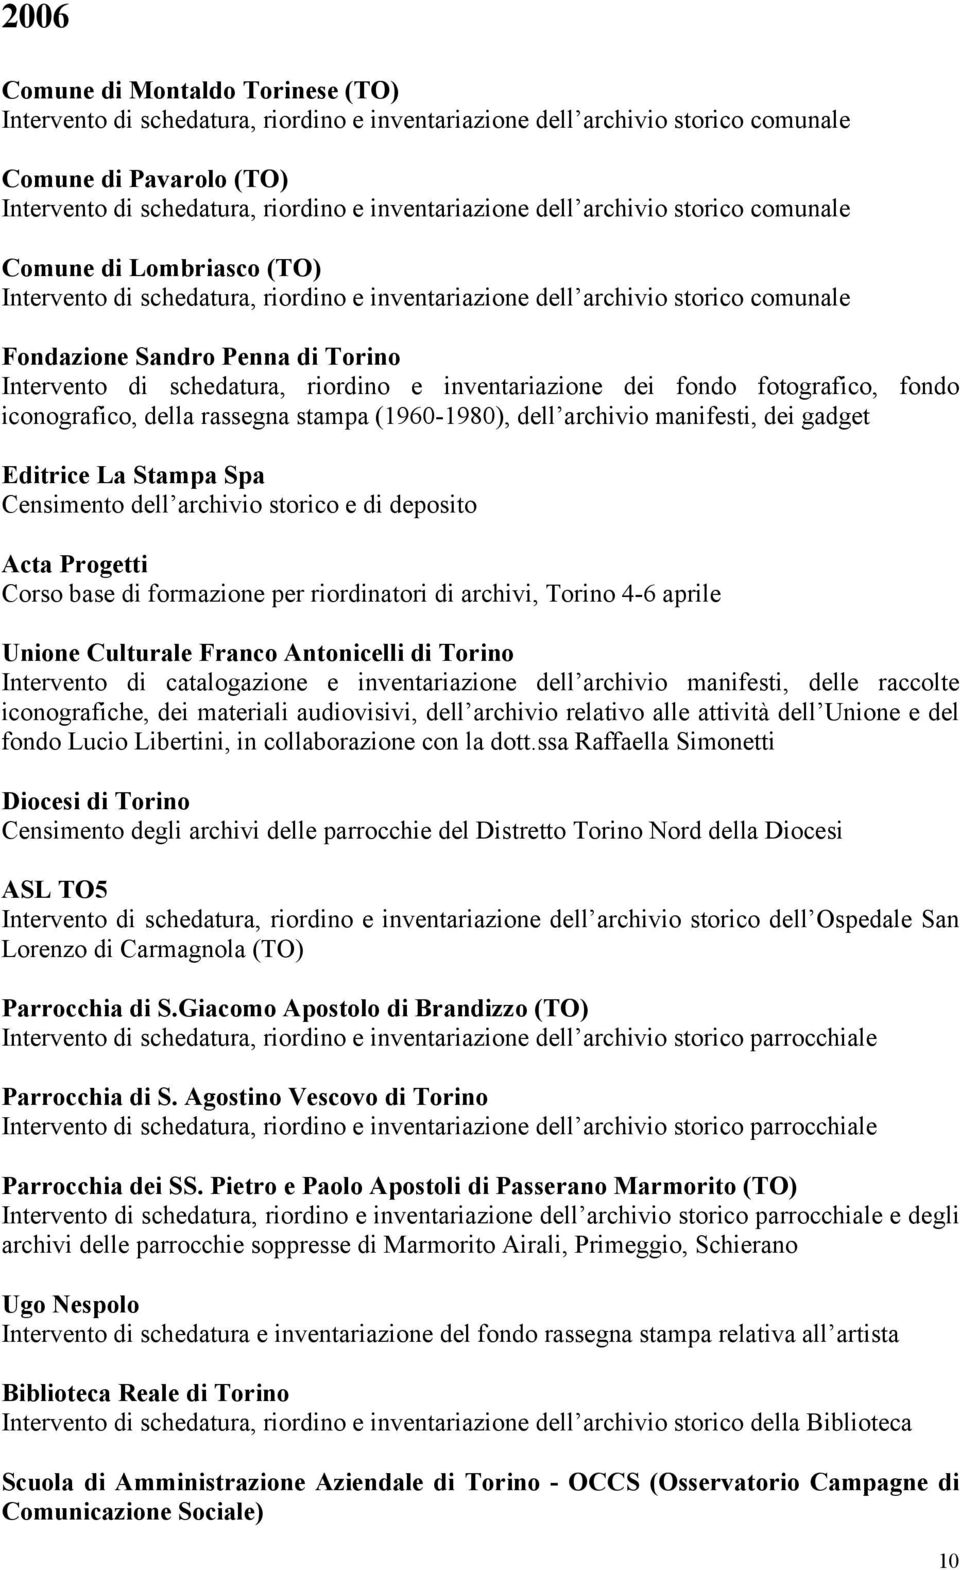 Acta Progetti Corso base di formazione per riordinatori di archivi, Torino 4-6 aprile Unione Culturale Franco Antonicelli di Torino Intervento di catalogazione e inventariazione dell archivio